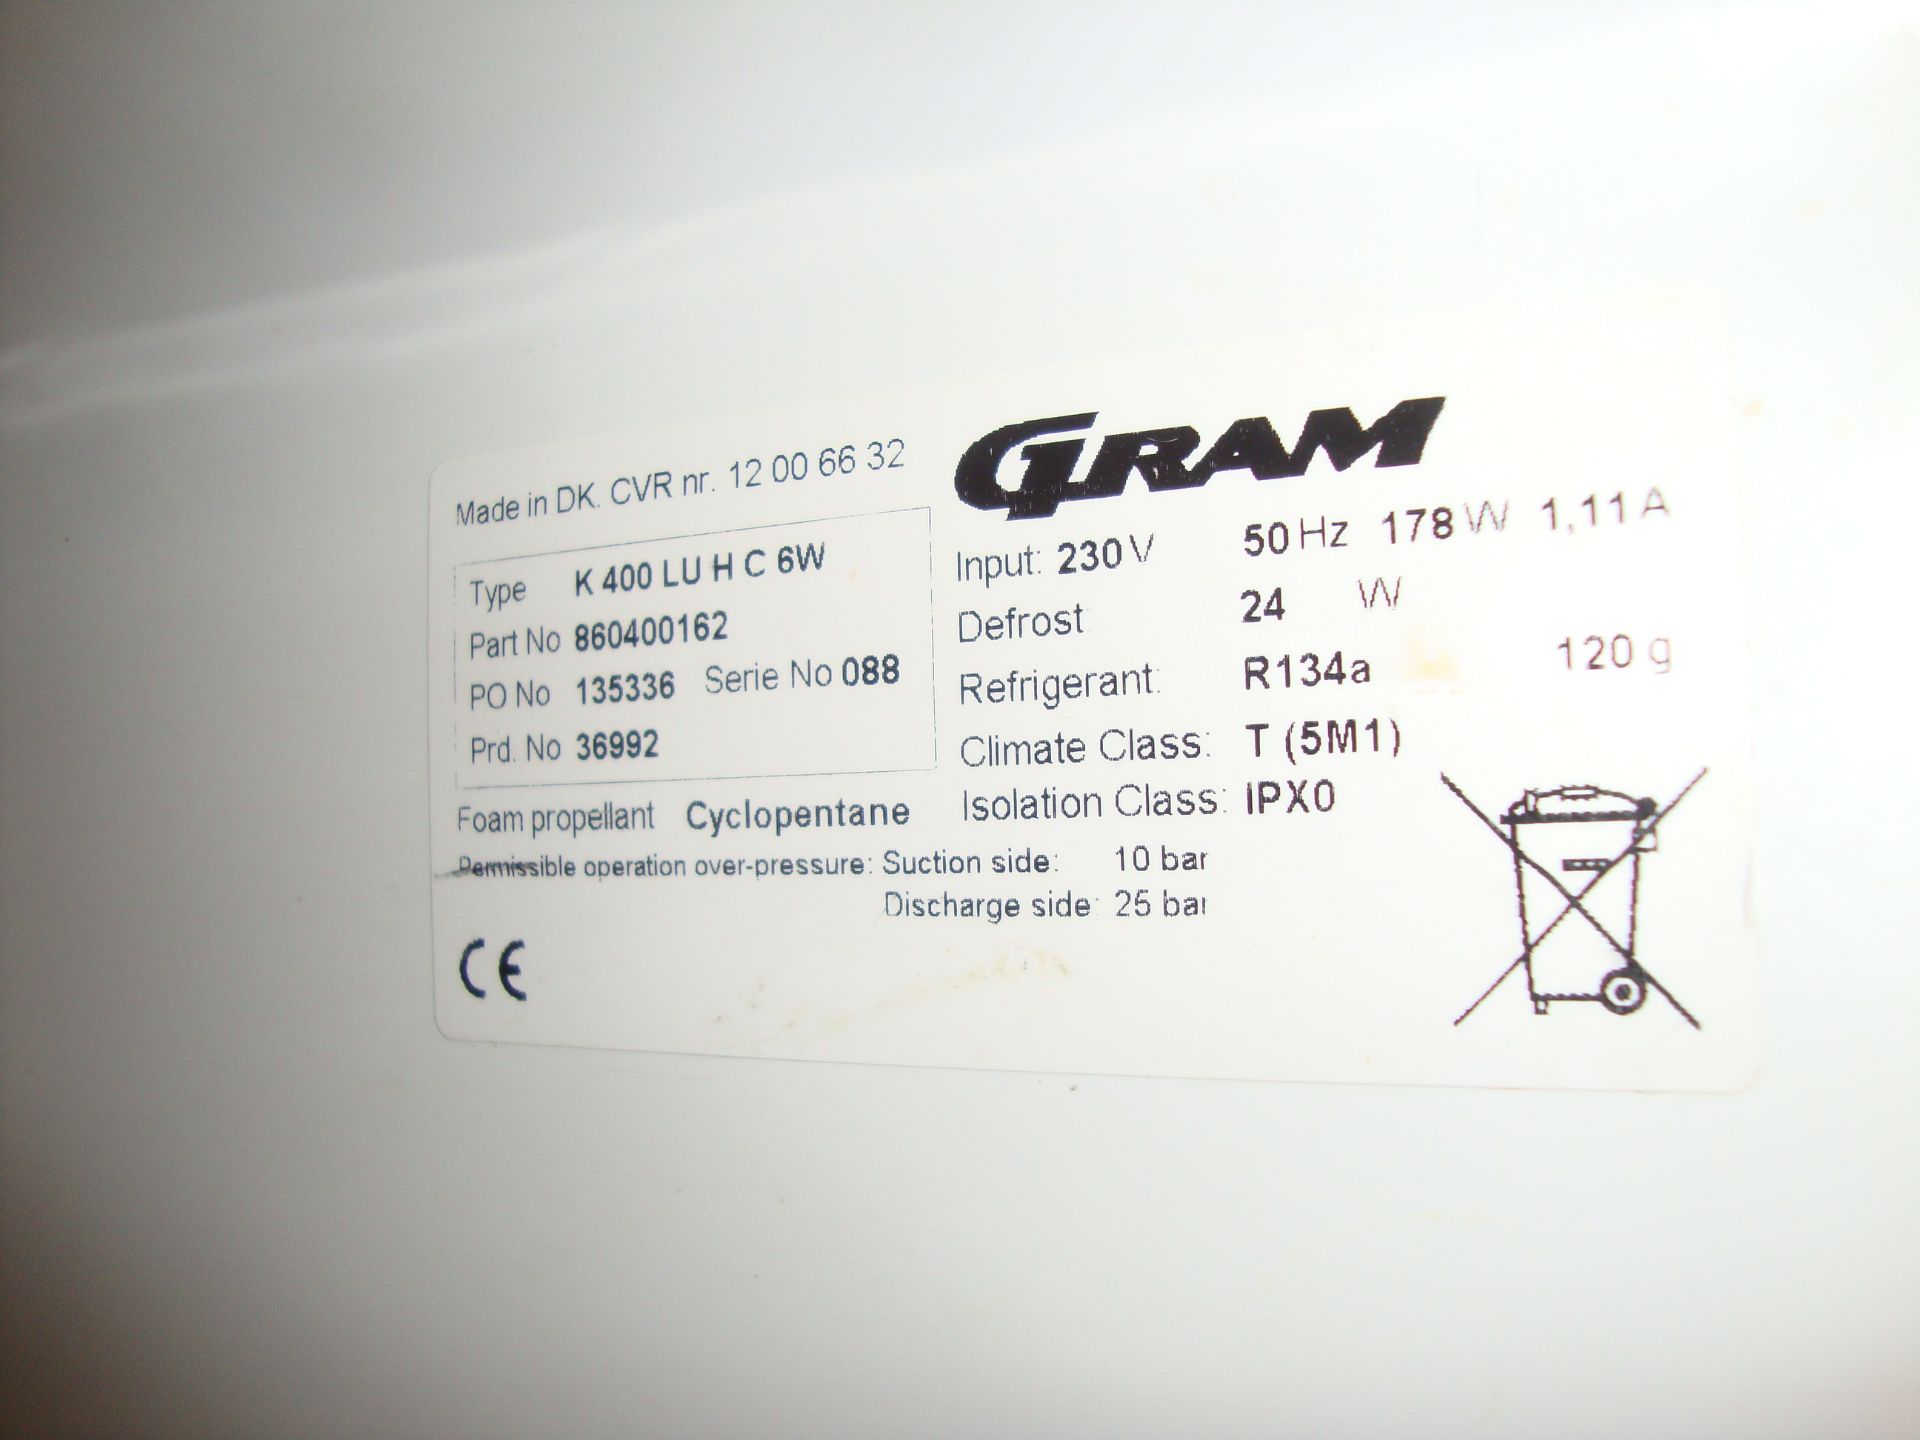 Gram K400 LUHC6W mobile tall fridge - Image 2 of 3